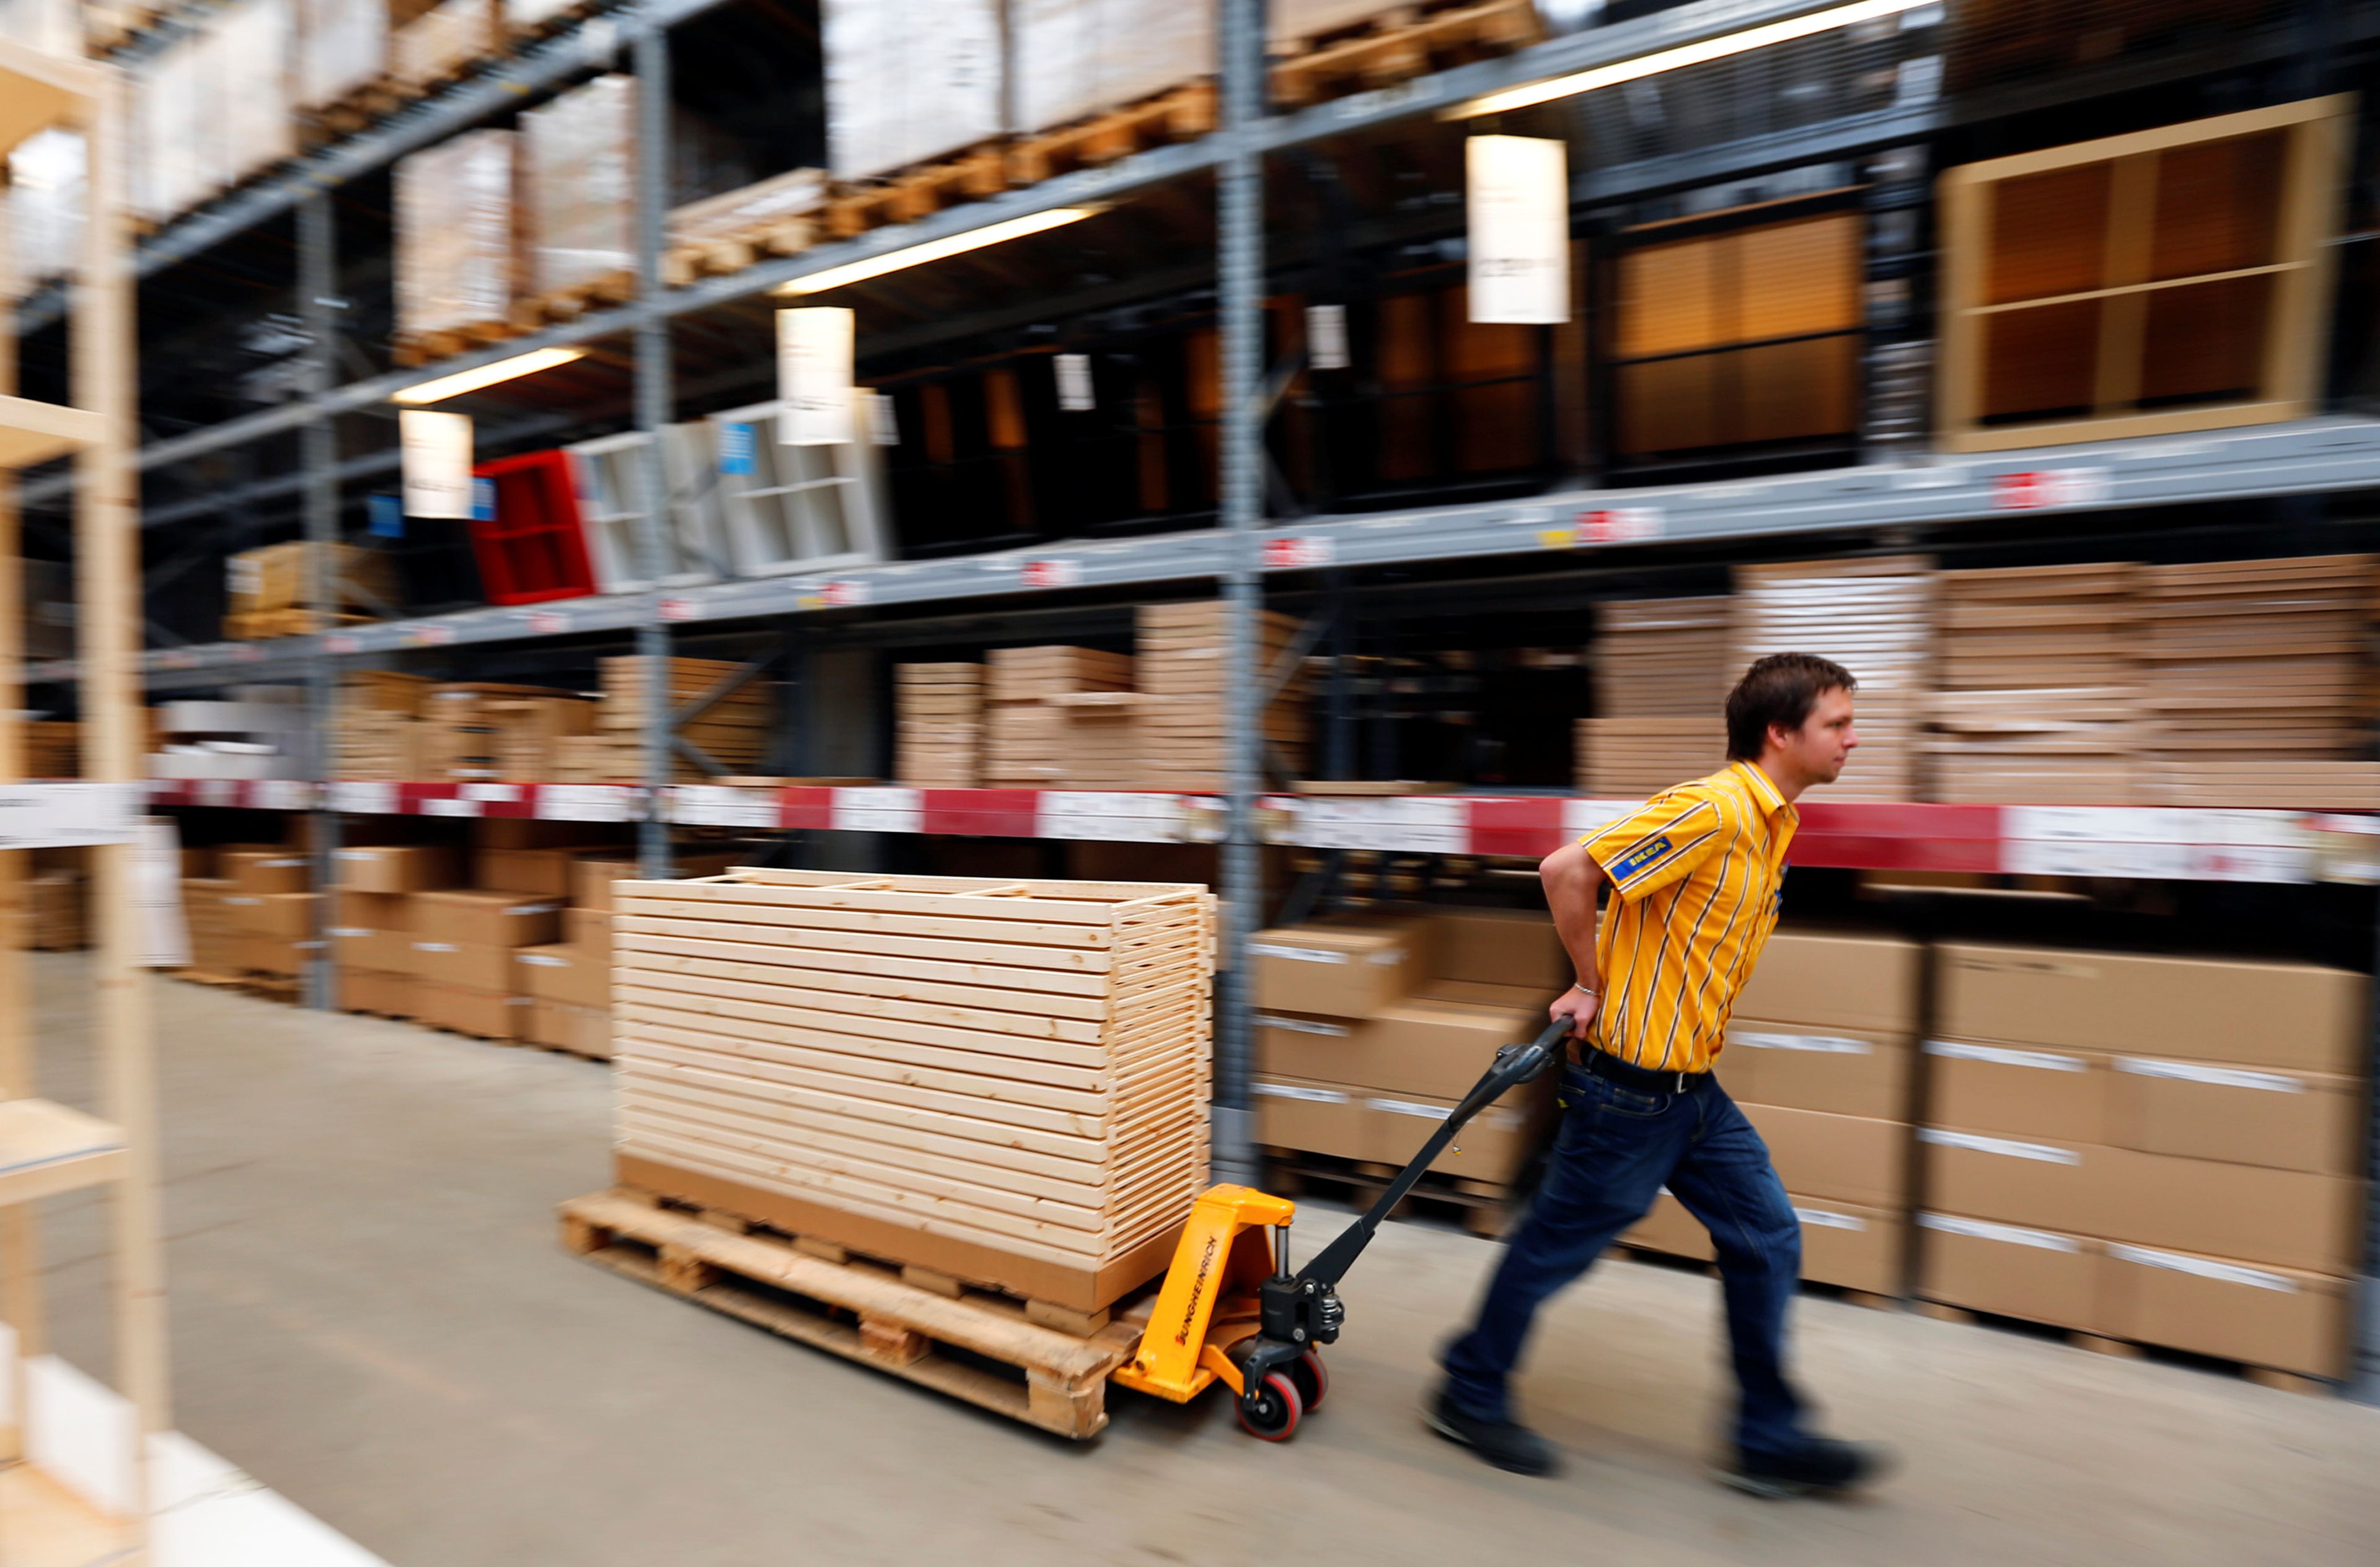 Ikea lanza nuevas ofertas de empleo, de 17.000 a 44.000 euros en varias ciudades españolas